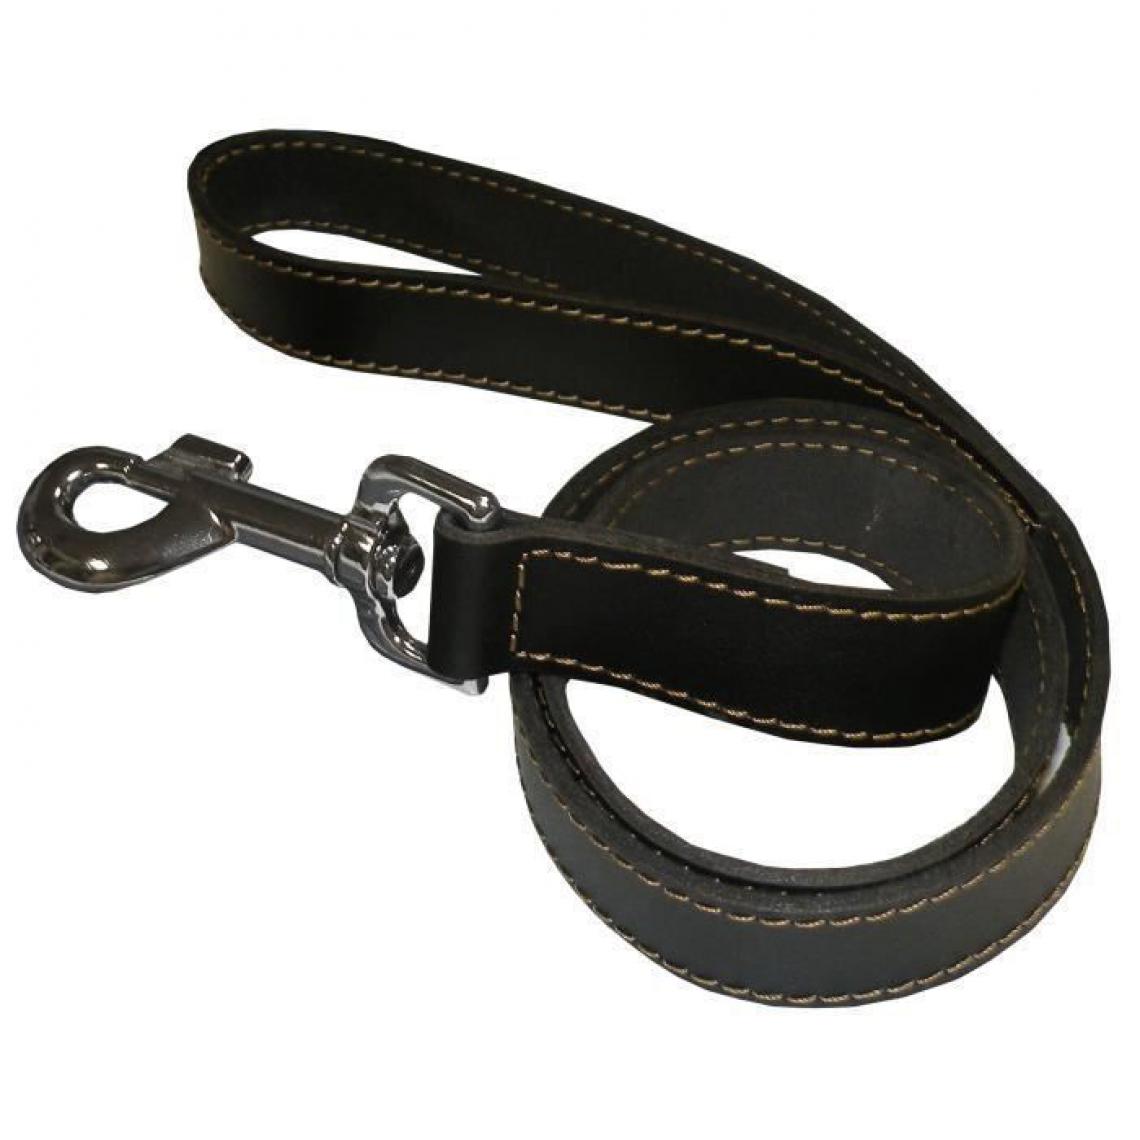 Yago - YAGO Laisse noir en cuir, Longue laisse pour chien 1,20m, Souple et Resistante - Laisse pour chien